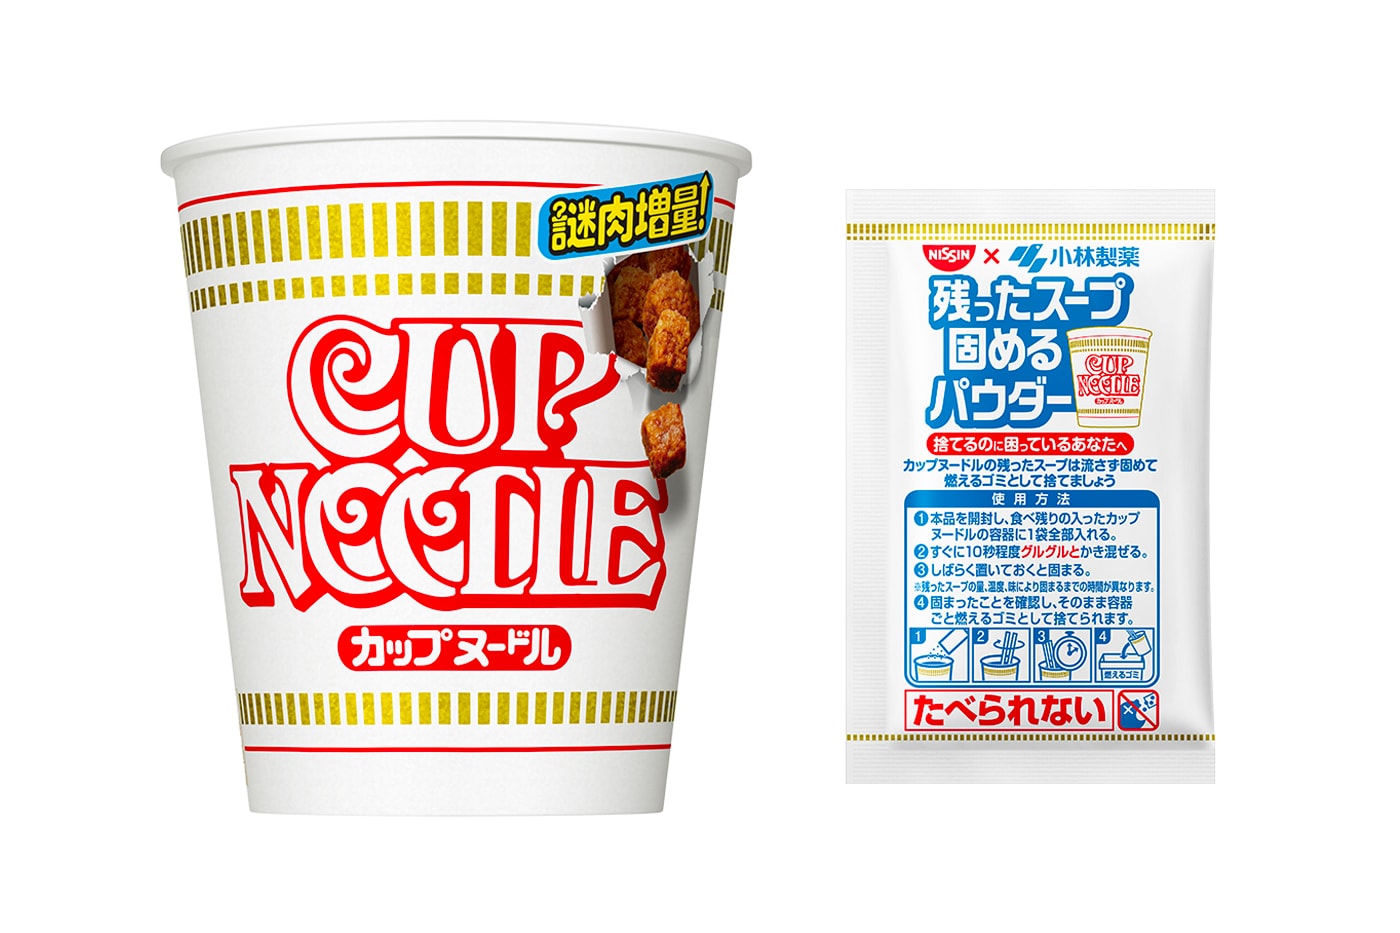 Disposable Nursing Pads – 100 Count - Noodle Soup